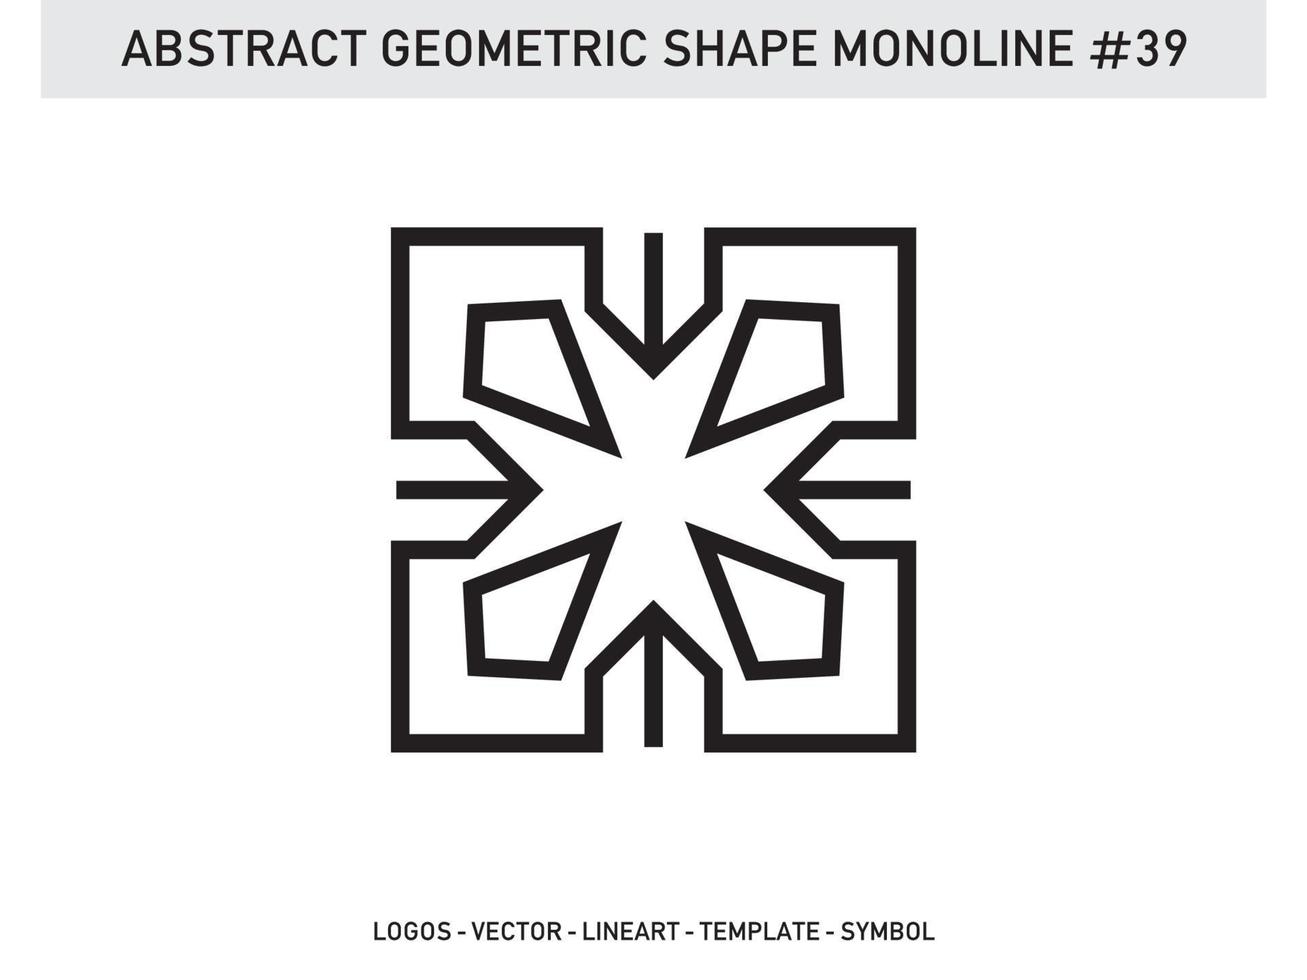 tuile de conception de contour de ligne monoline géométrique abstraite gratuite vecteur